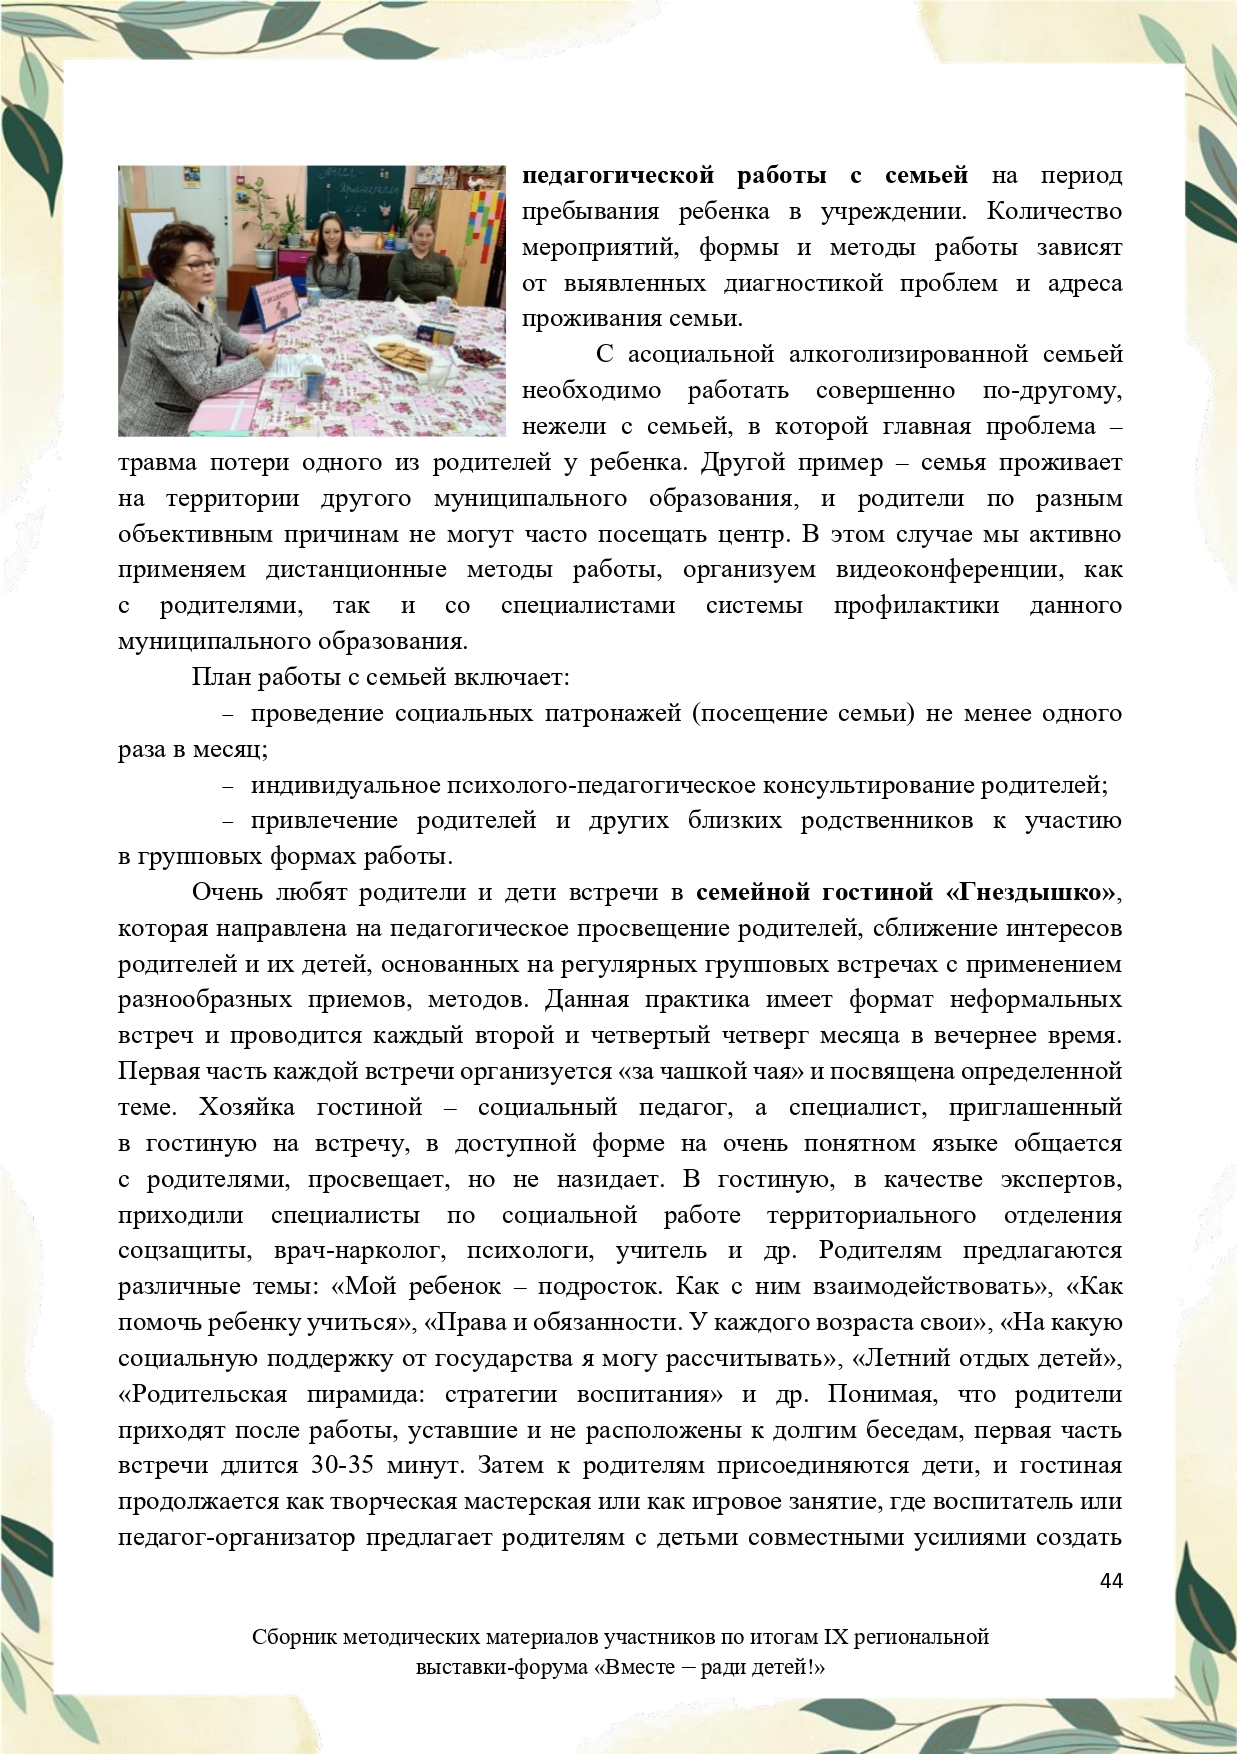 Sbornik_metodicheskikh_materialov_uchastnikov_IX_regionalnoy_vystavki-foruma_Vmeste__radi_detey_33__2023_page-0044